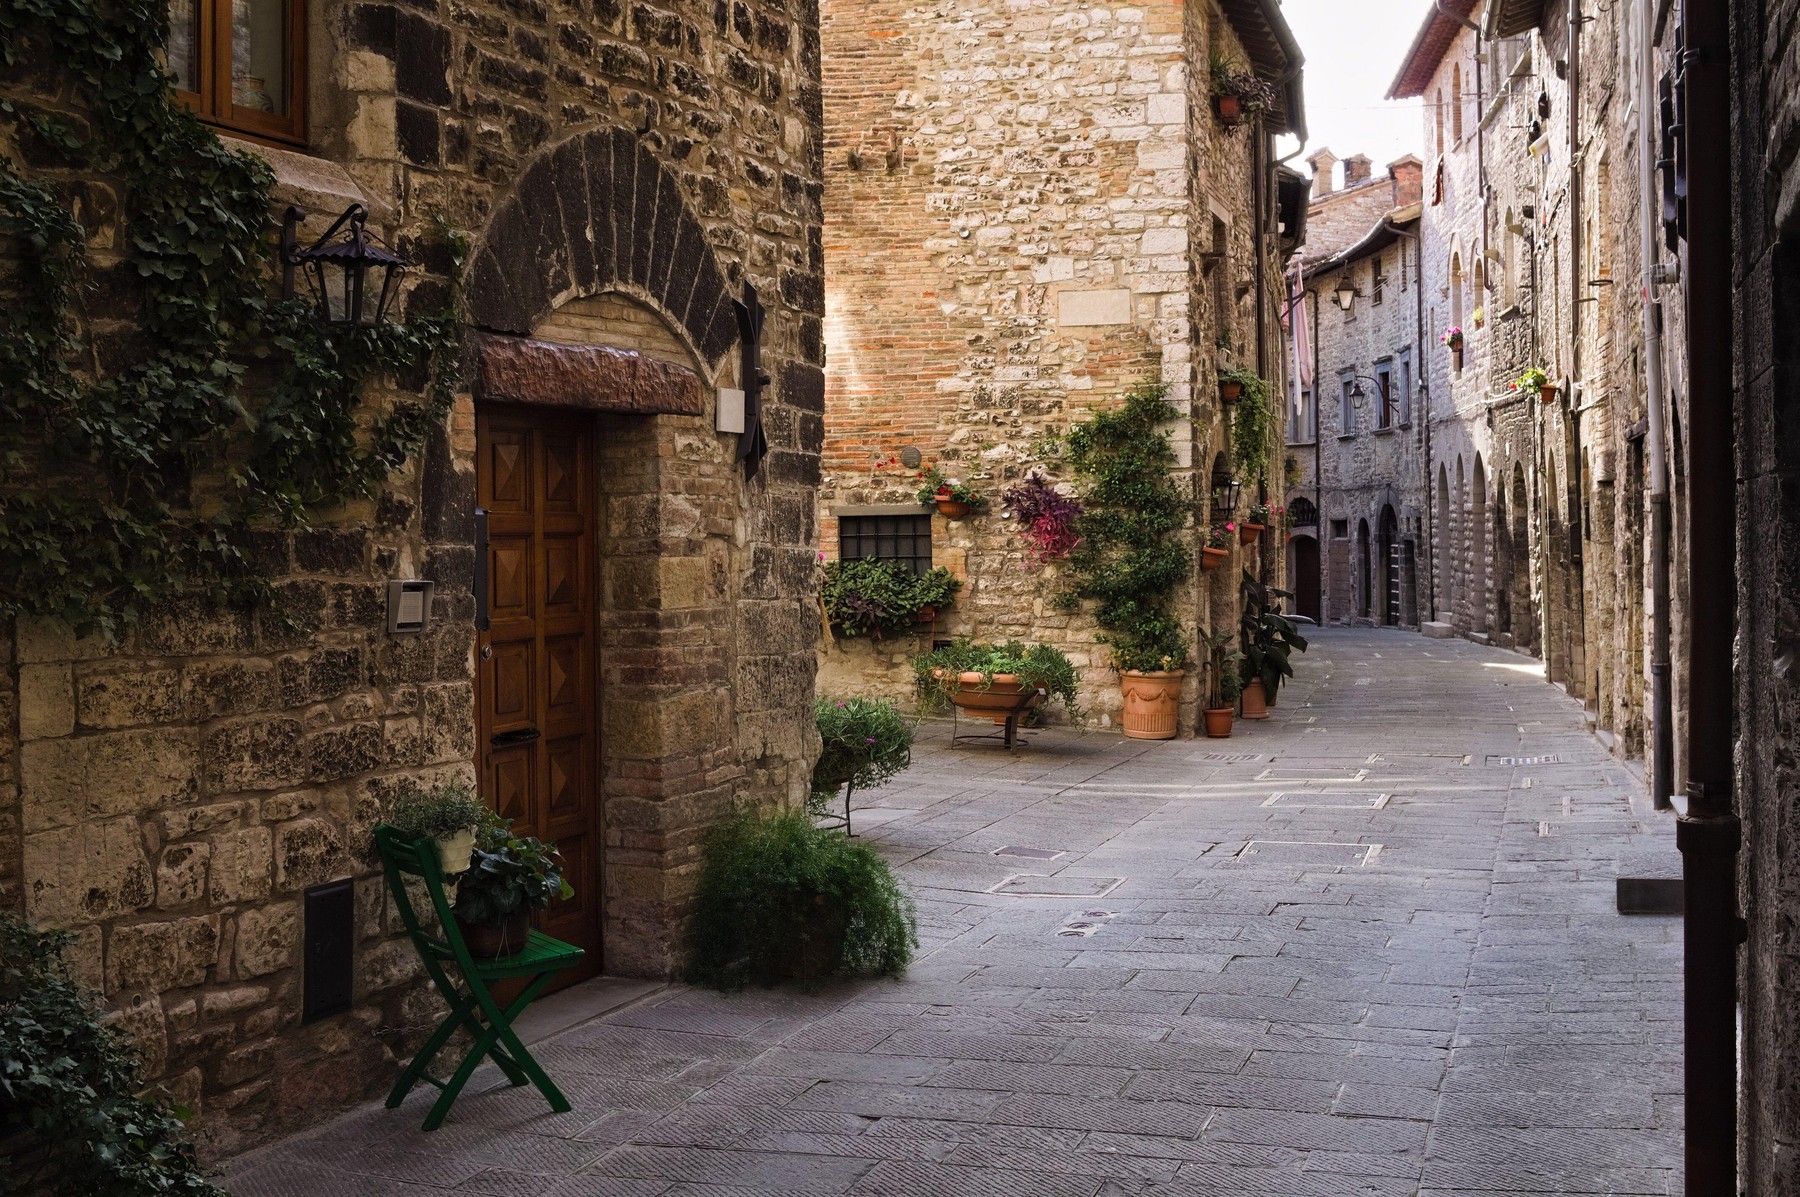 Italijanska ulica, fotografija je simbolična. Foto: Profimedia